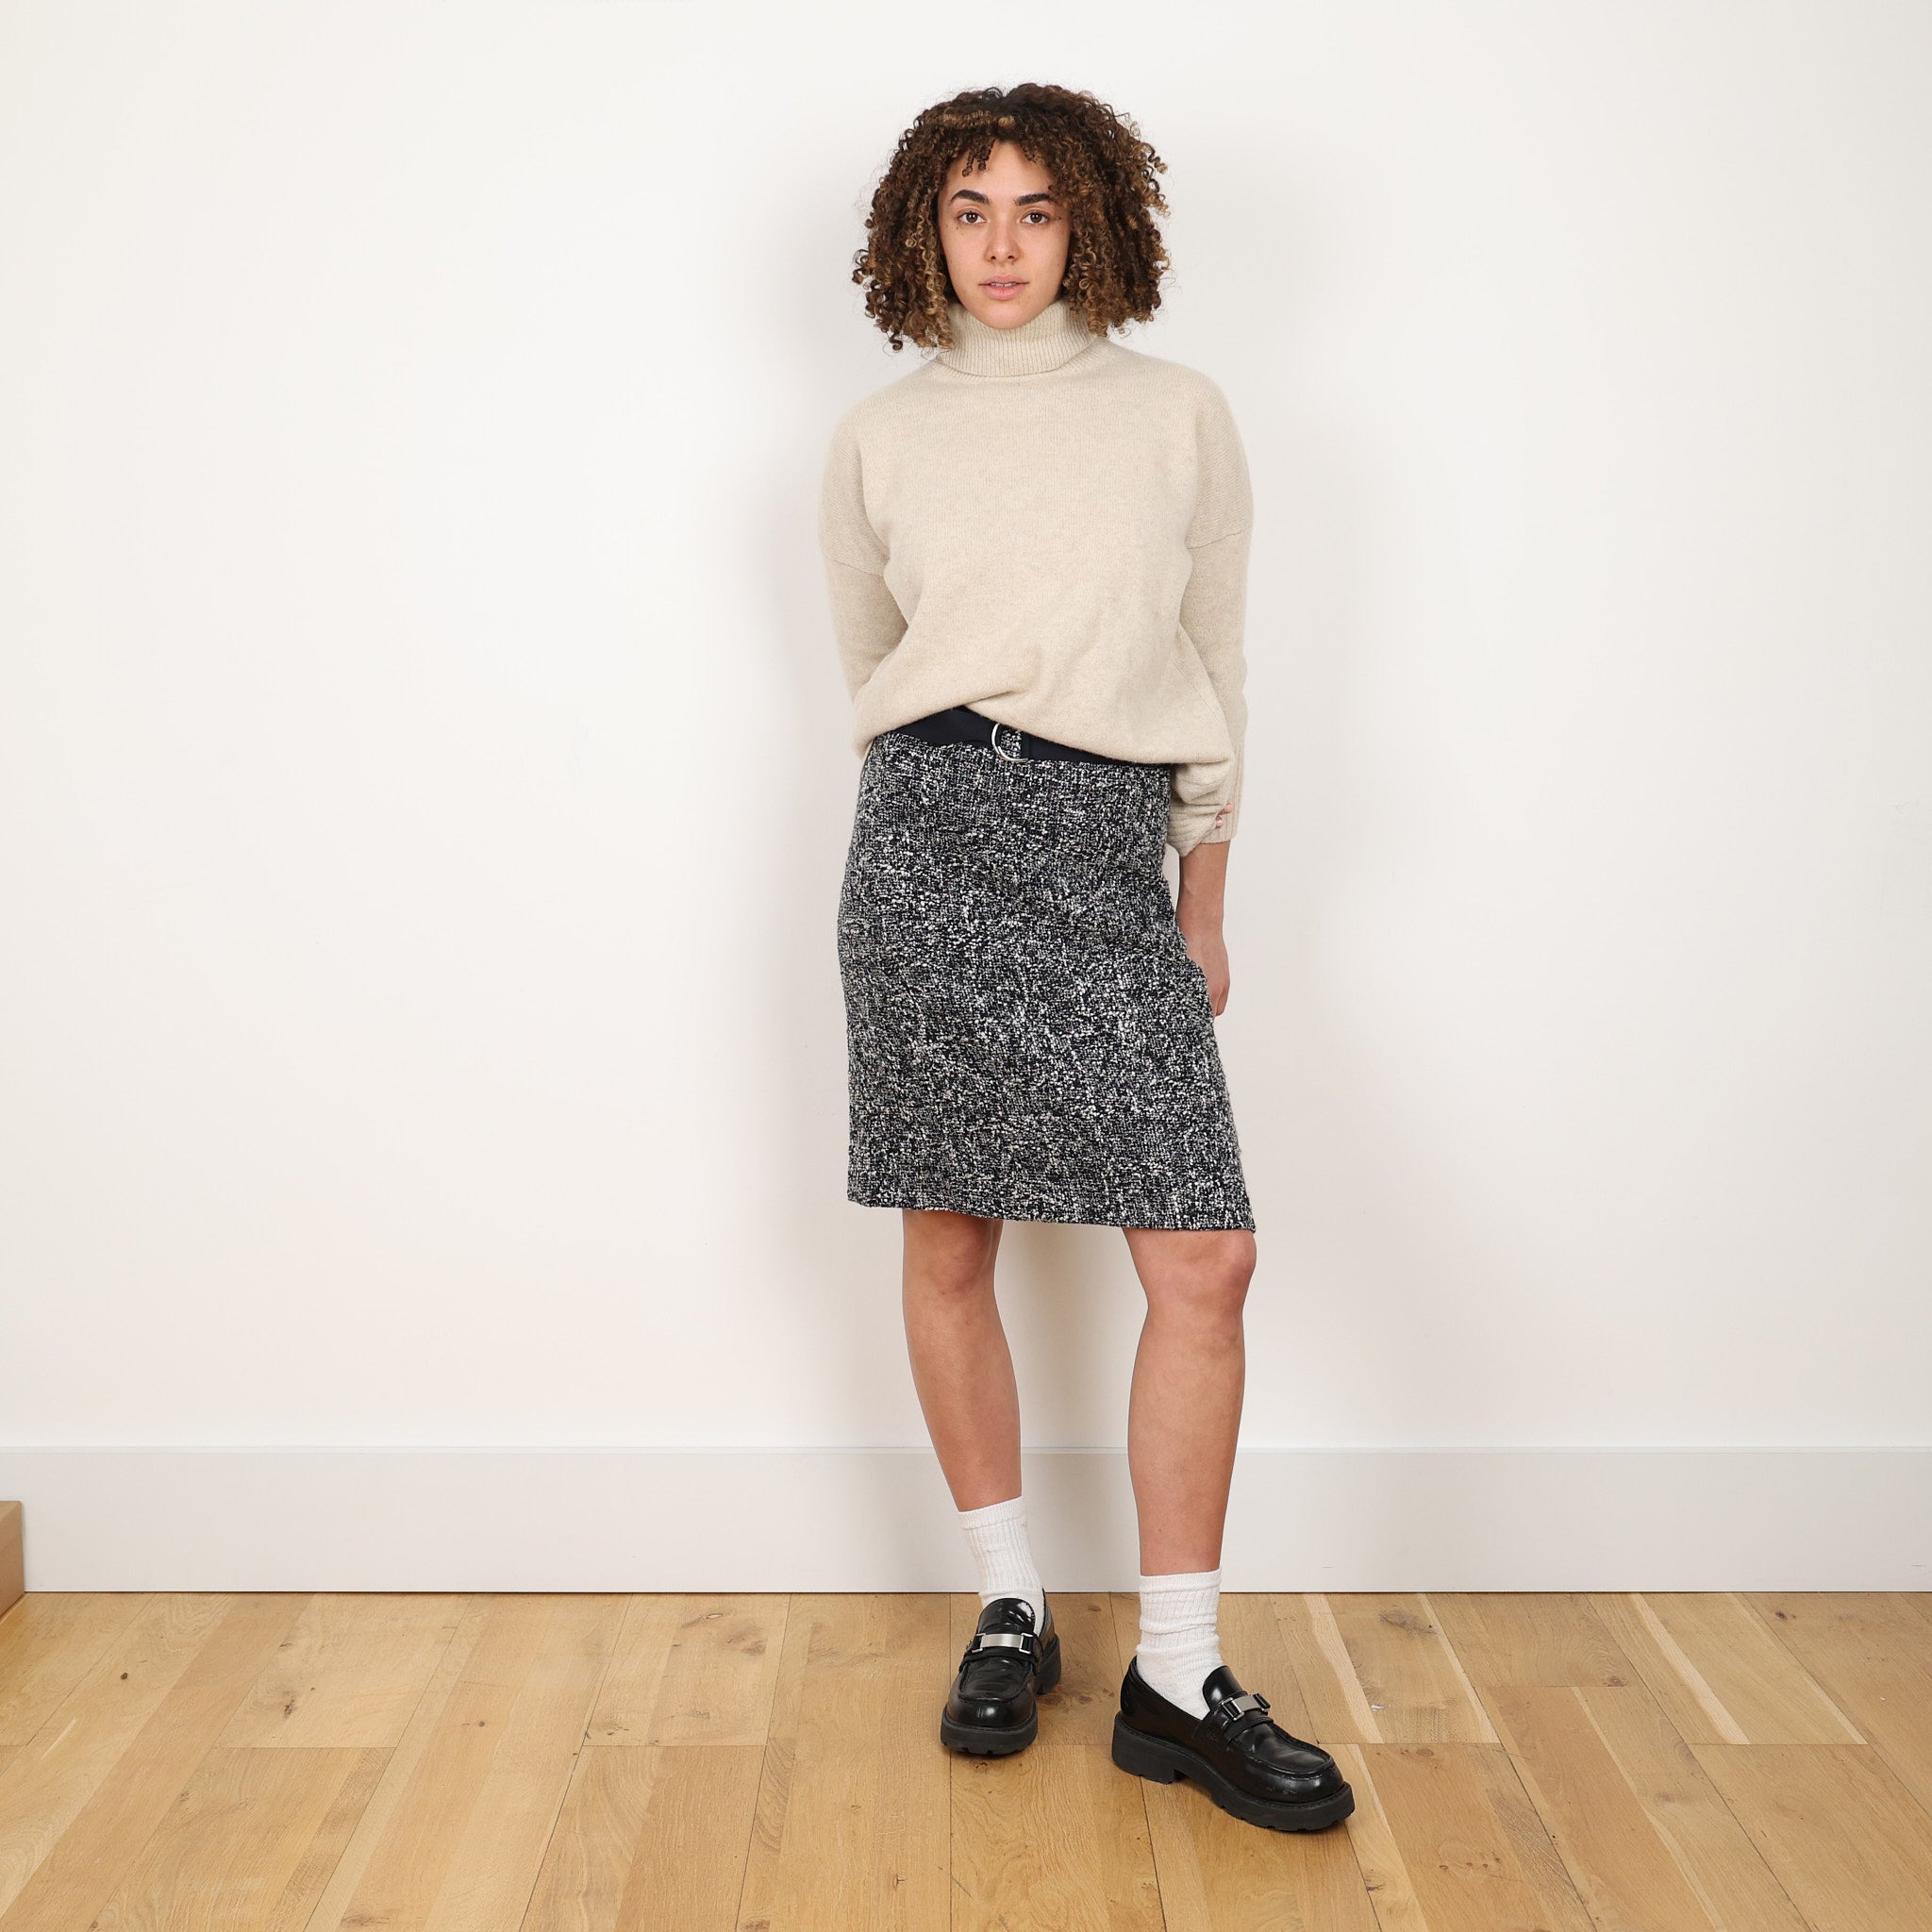 Skirt, UK Size 12